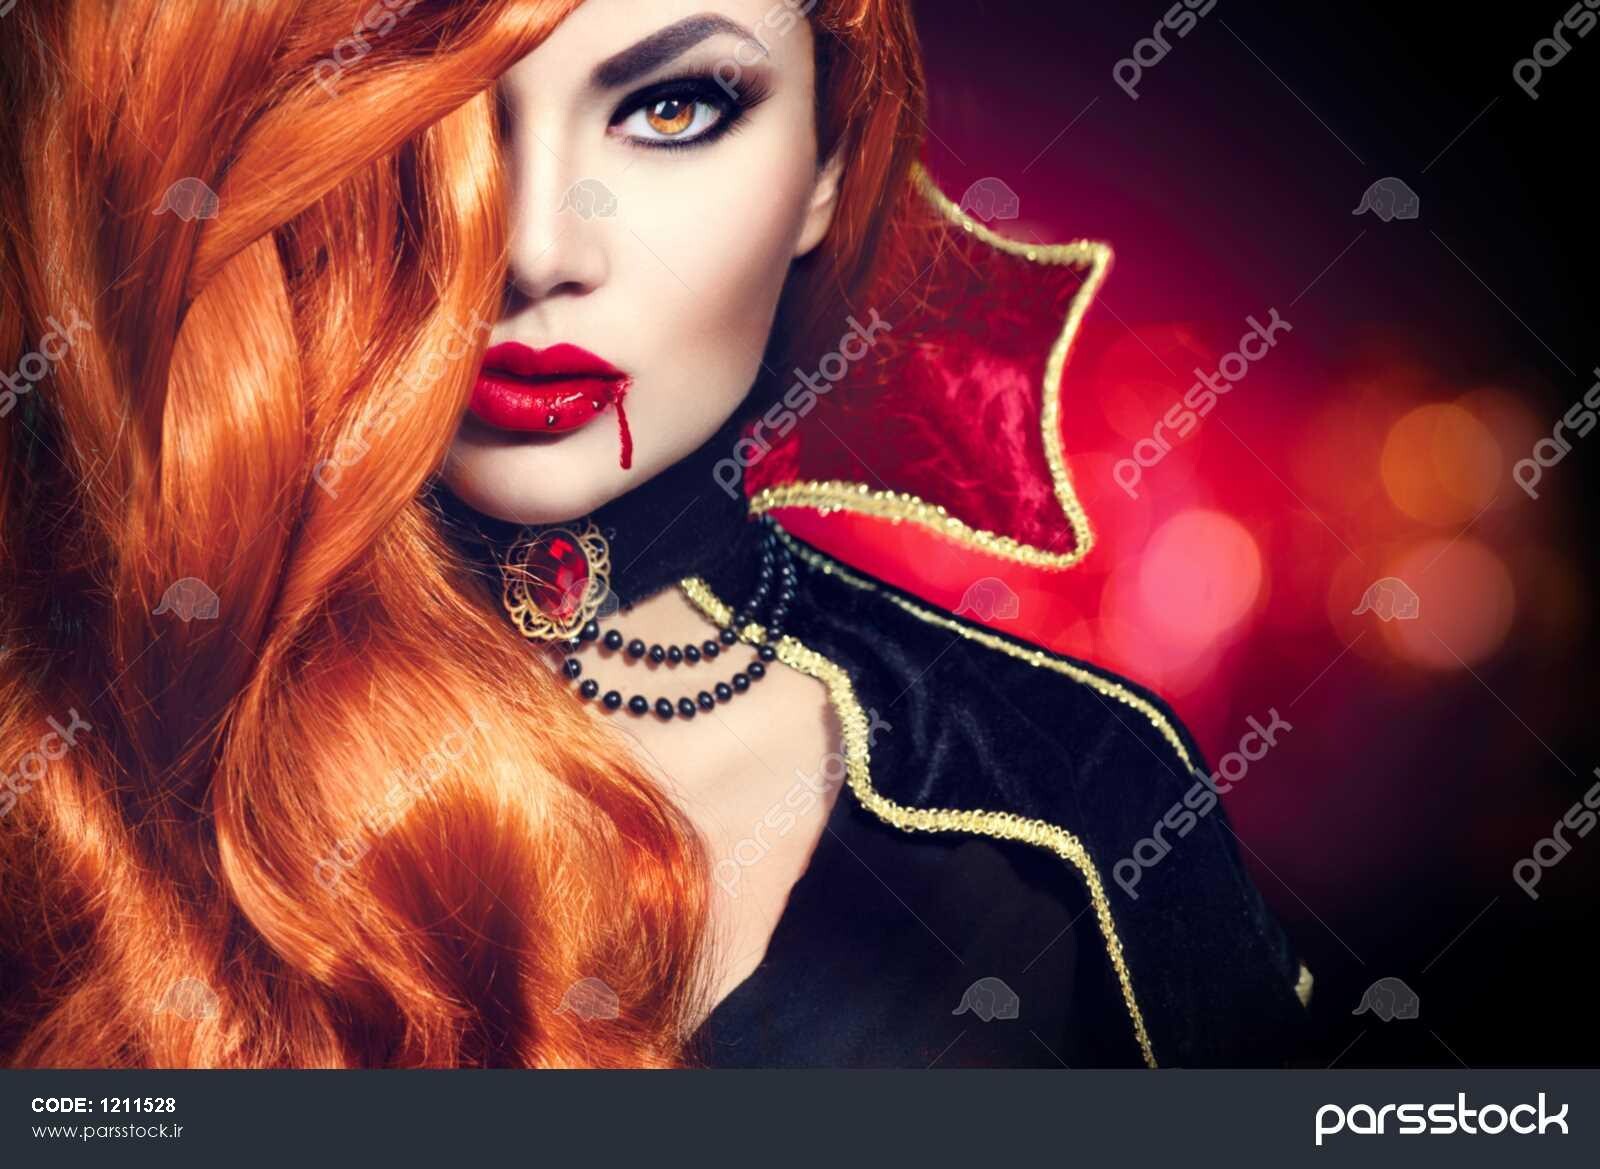 1211528 پرتره زن خون آشام هالووین زرق و برق زیبا مد خانم خون آشام با موهای بلند قرمز زیبایی را تشکیل